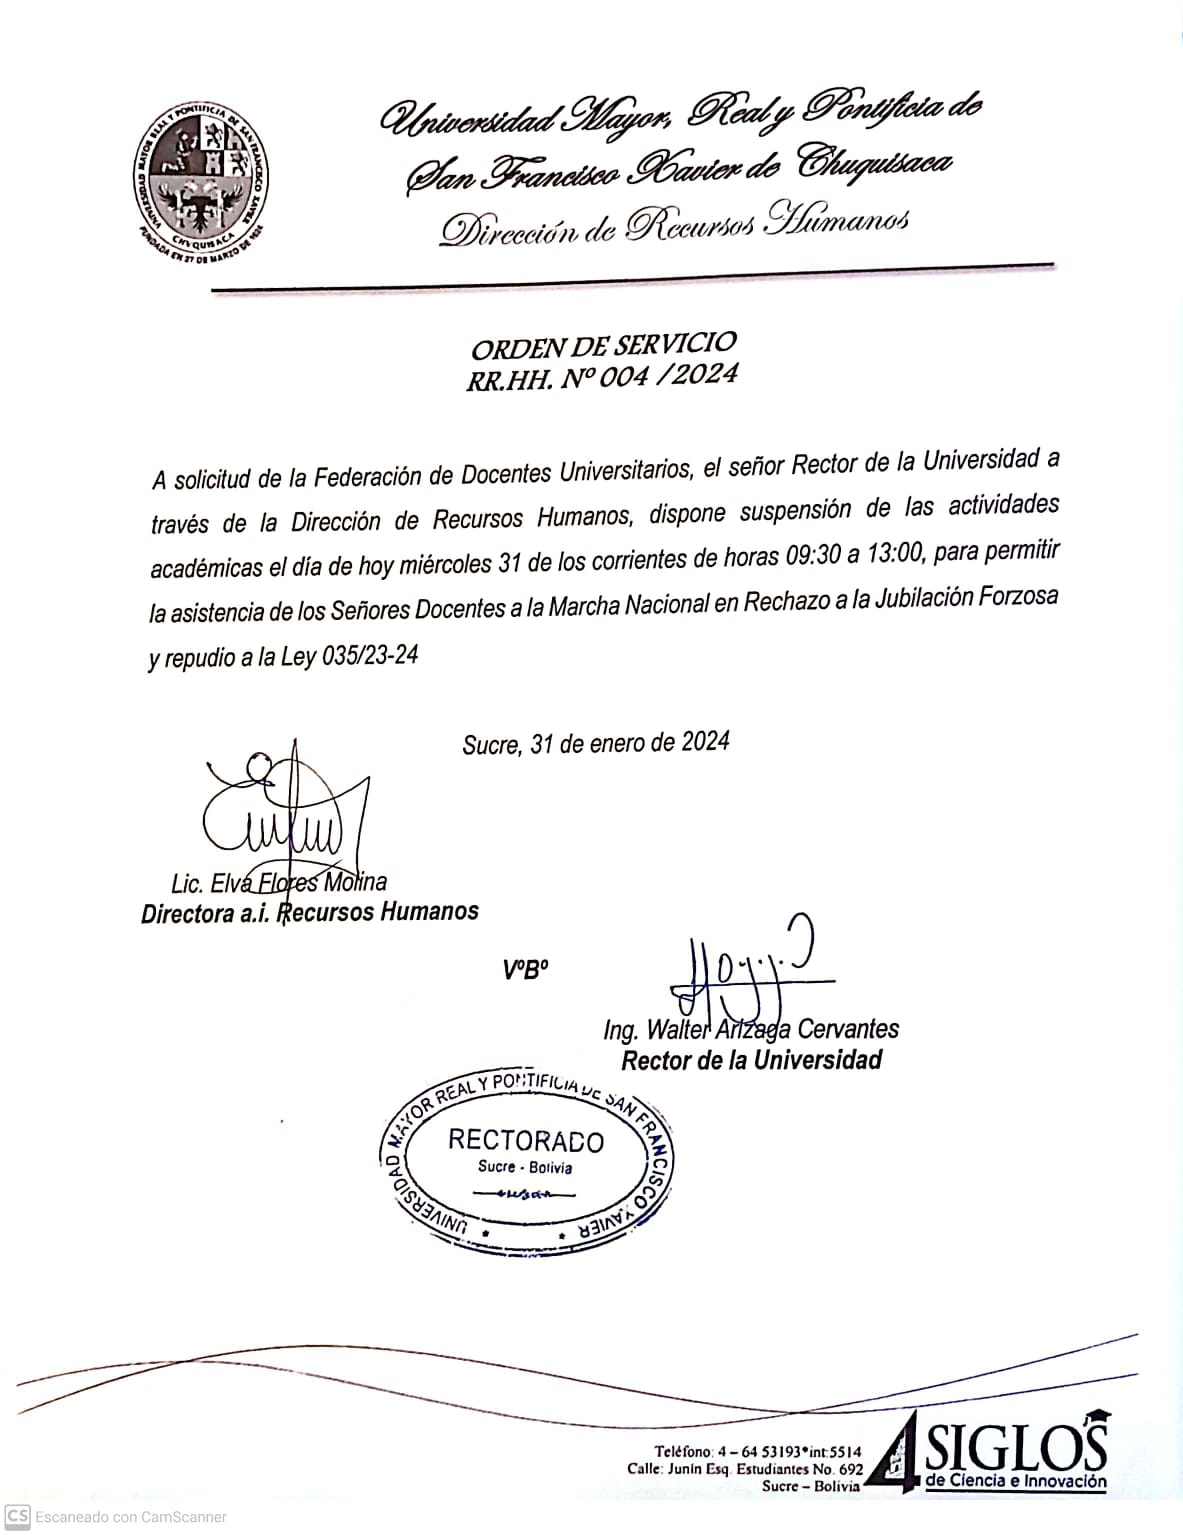 ORDEN DE SERVICIO RR.HH. Nº 004/2024 , SUSPENSIÓN DE ACTIVIDADES ACADÉMICAS.